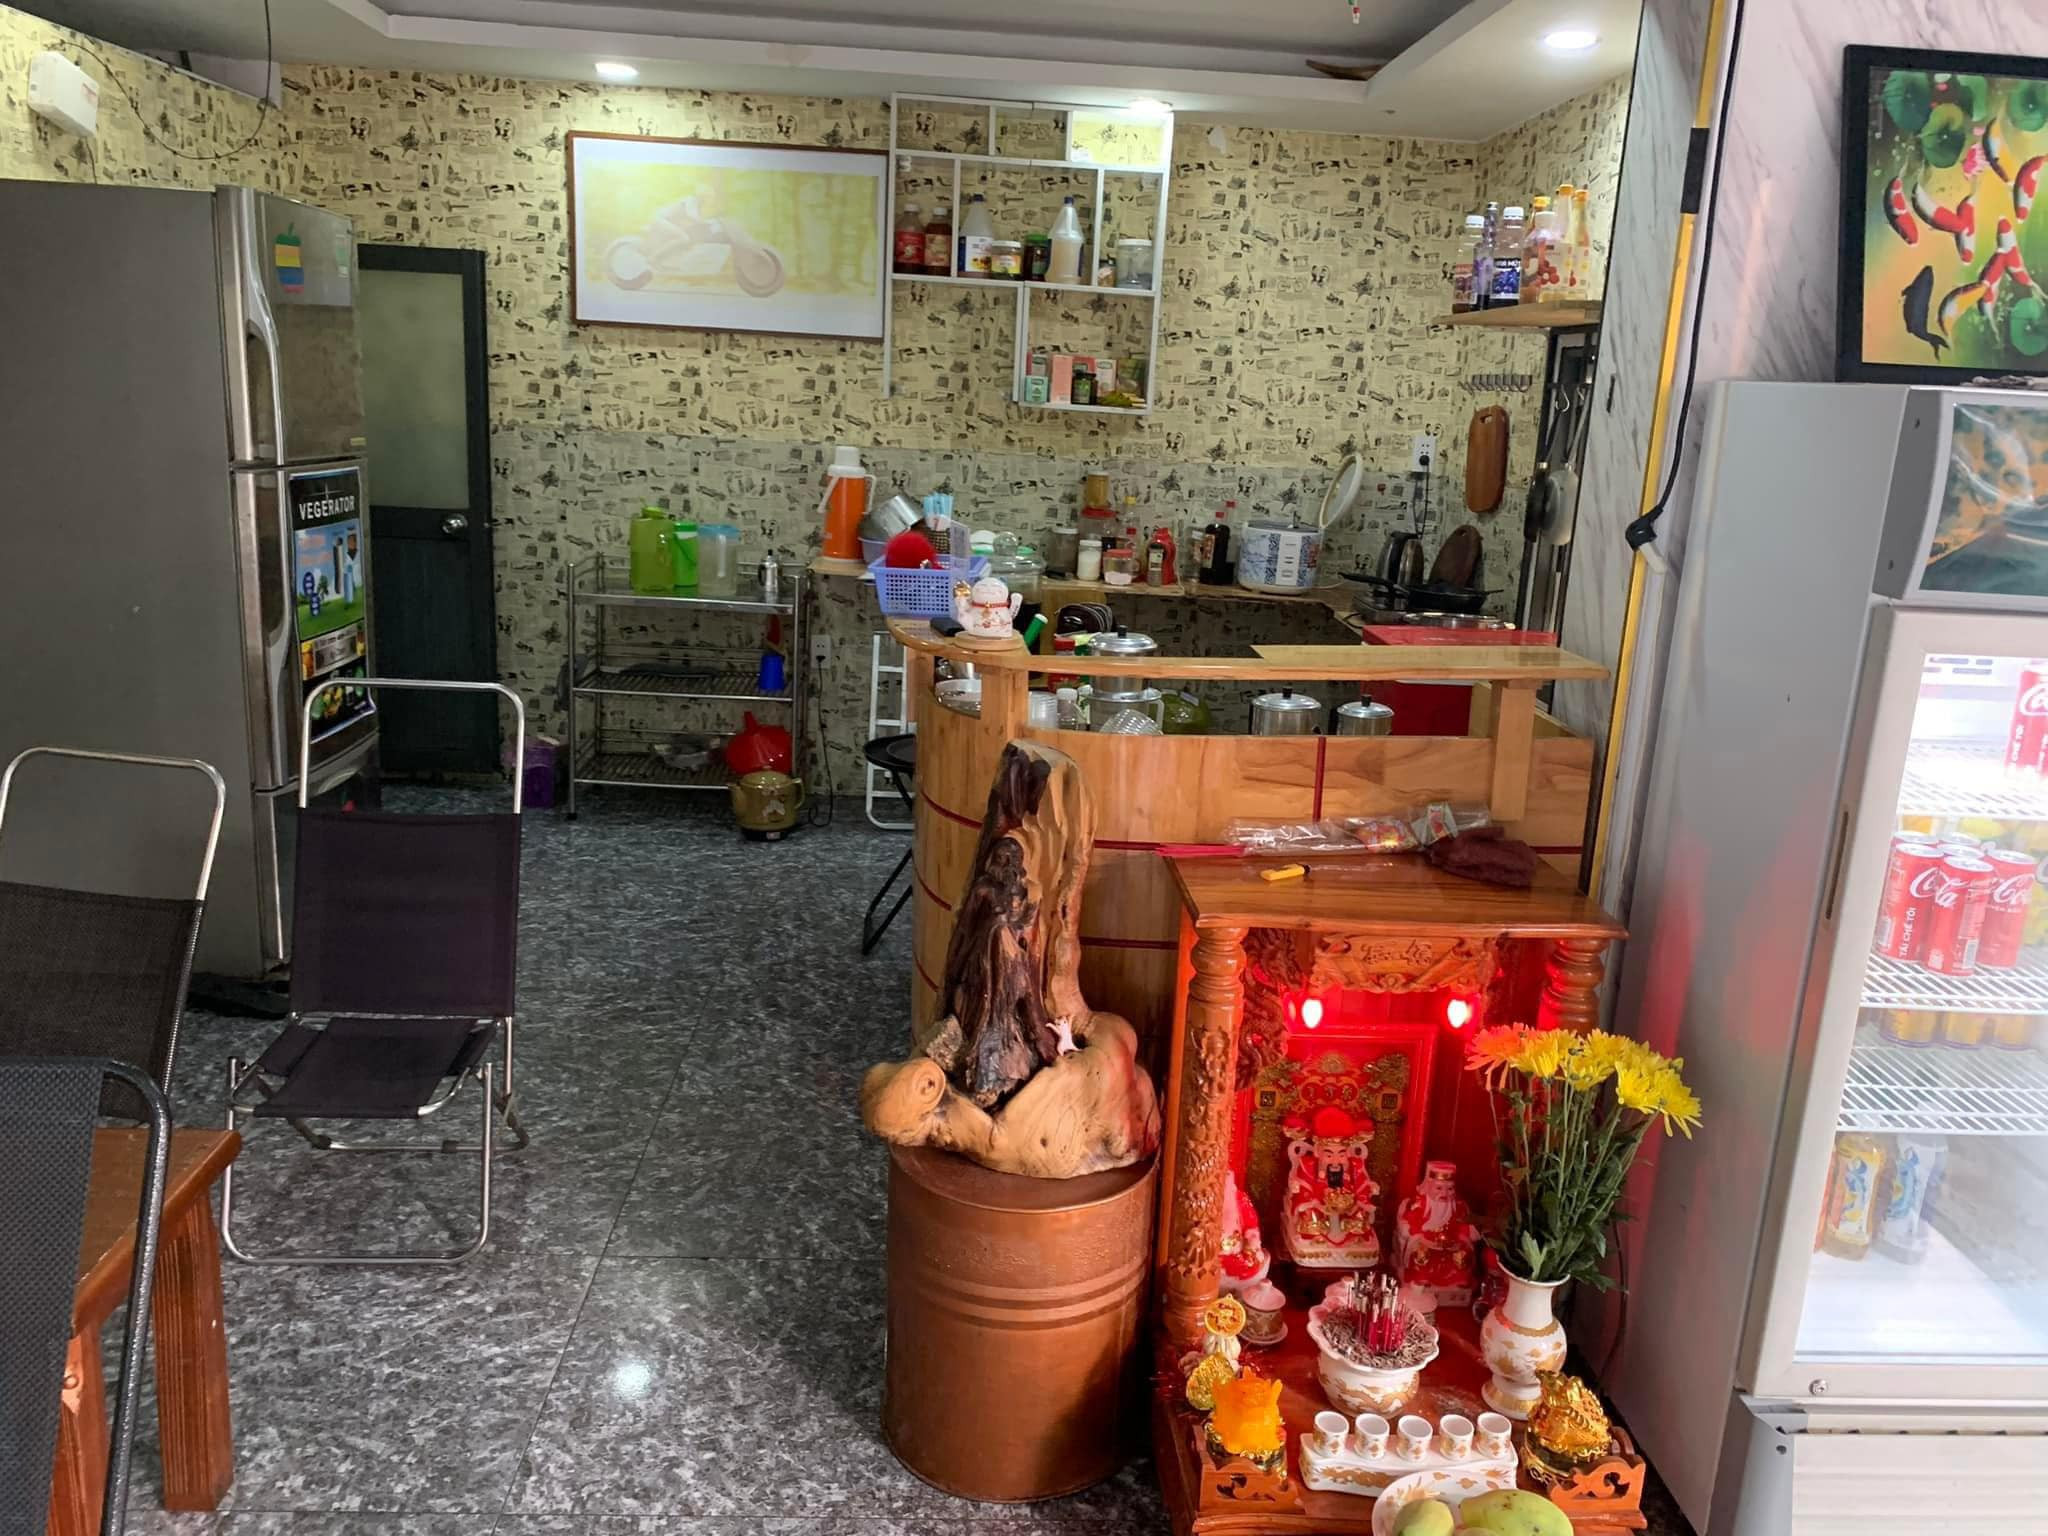 CẦN SANG NHƯỢNG LẠI QUÁN CAFE TẠI TÂN PHÚ - TP HCM Góc 2 mặt tiền Tân Phú.21a Nguyễn Trường Tộ - Ảnh chính